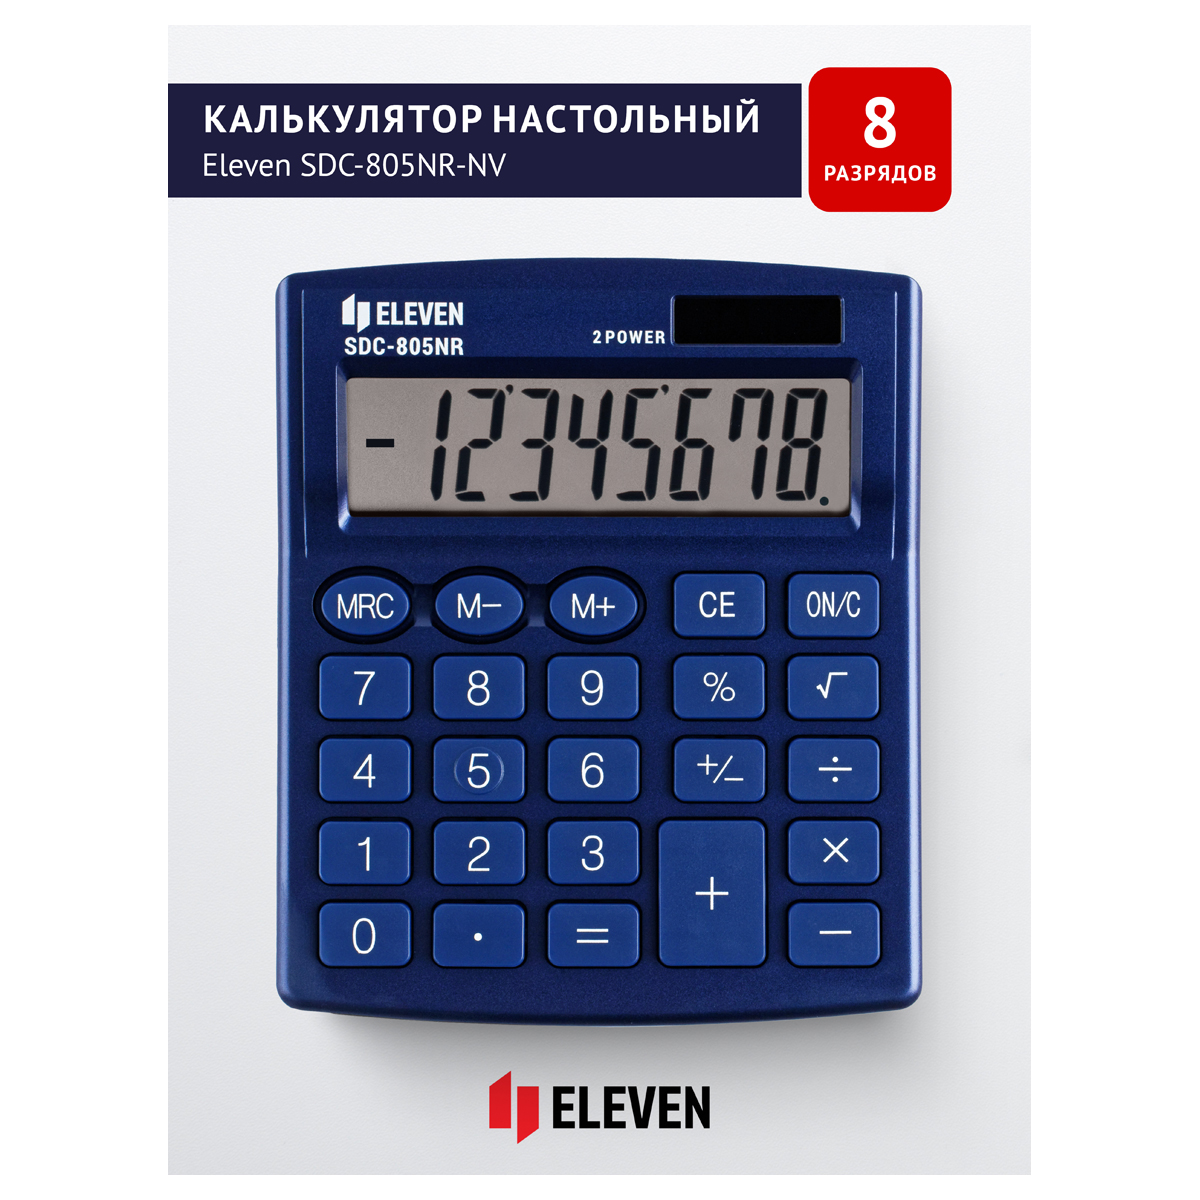 Я339211 Калькулятор настольный Eleven SDC-805NR-NV, 8 разр., двойное питание, 127*105*21мм, темно-си